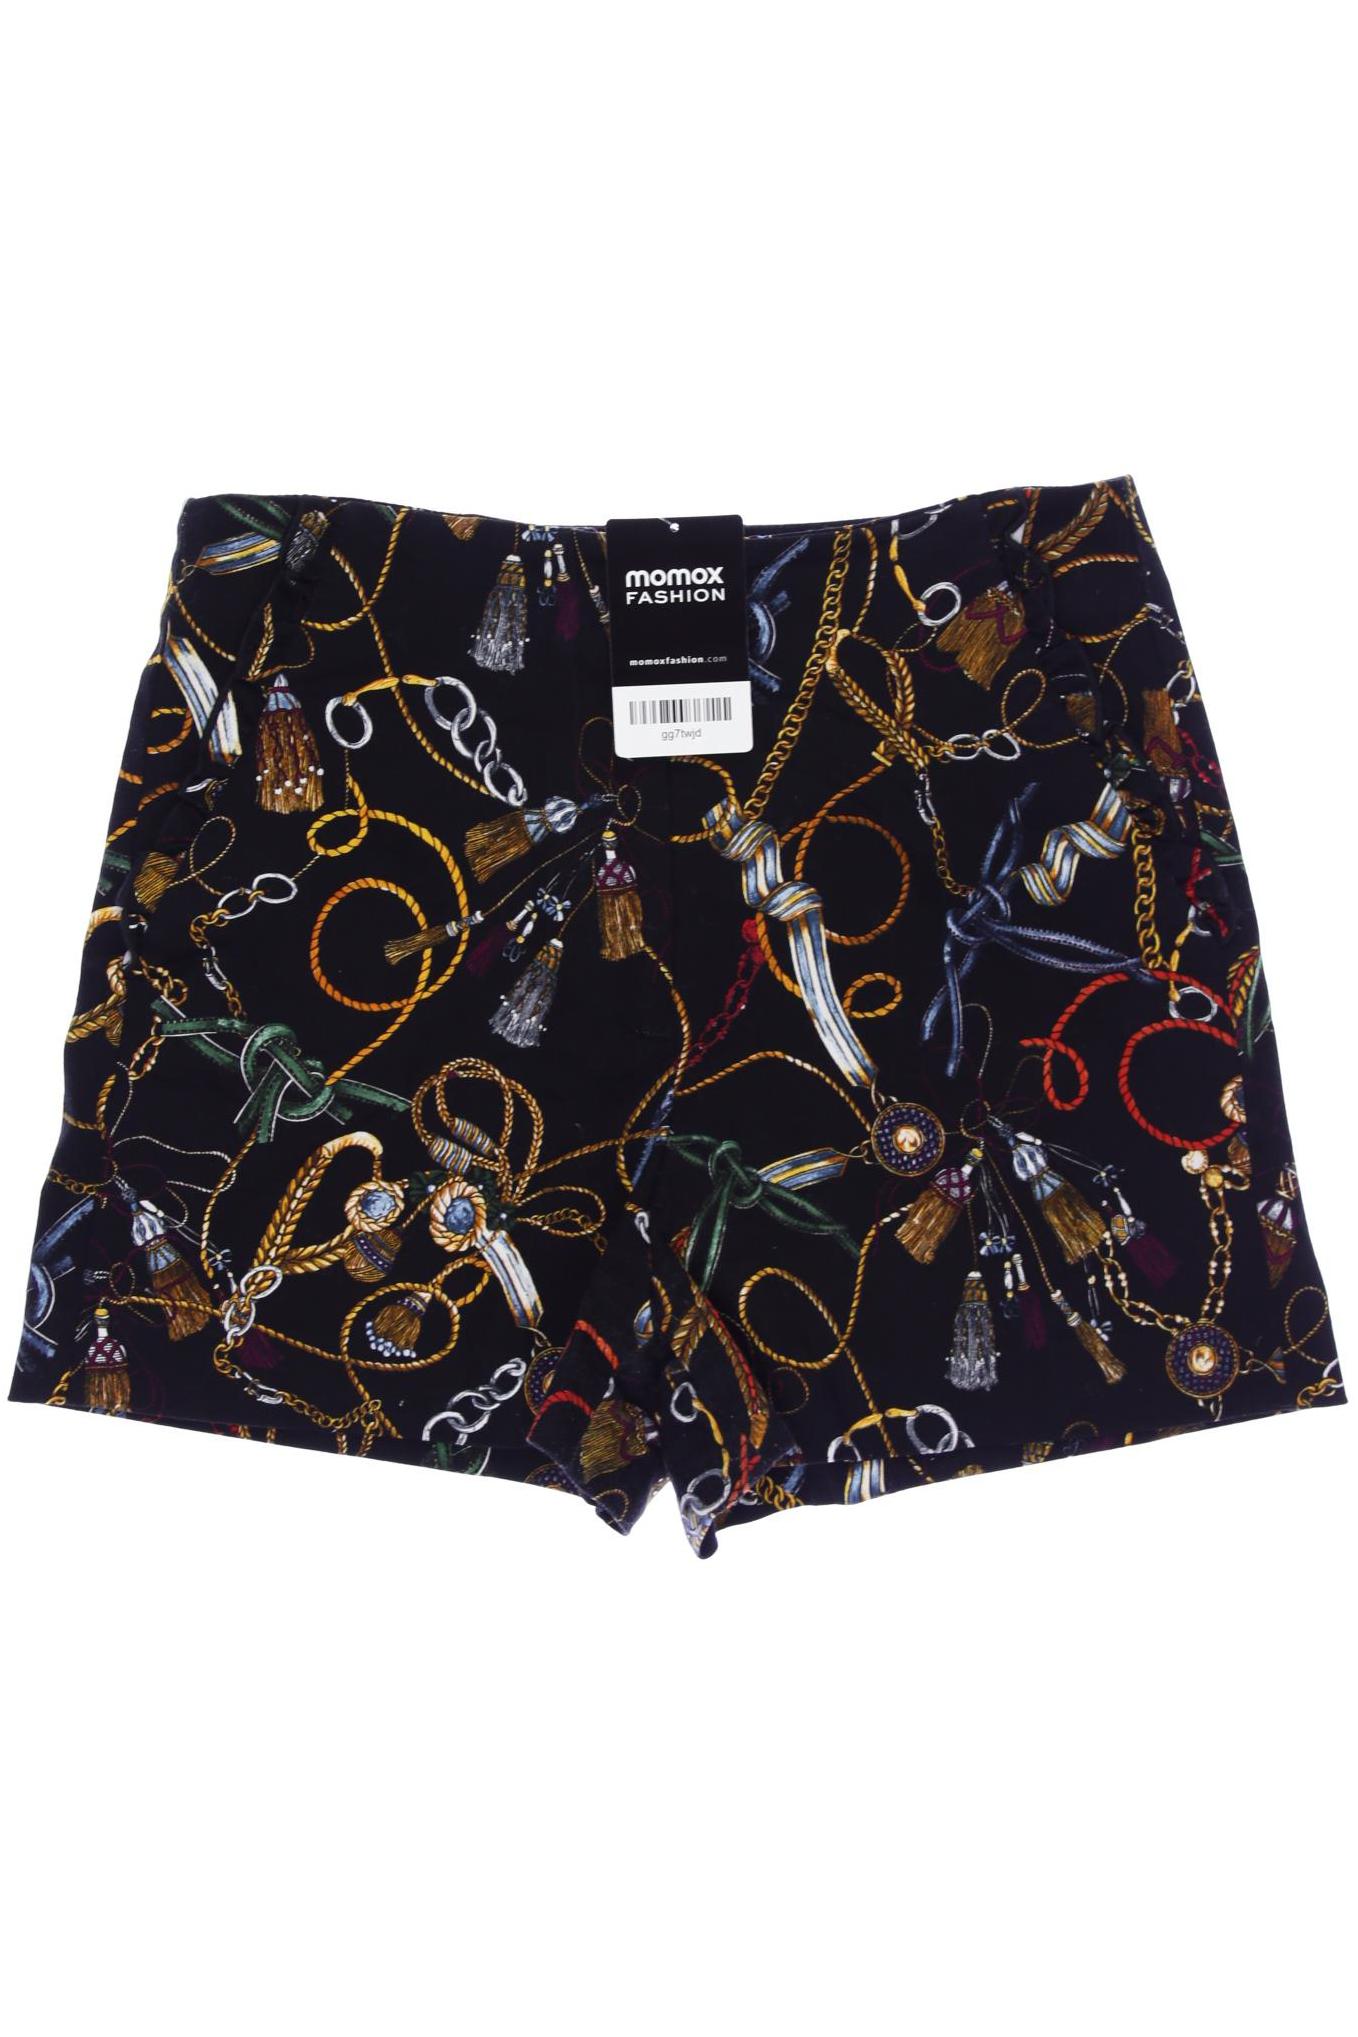 Zara Damen Shorts, schwarz, Gr. 38 von ZARA